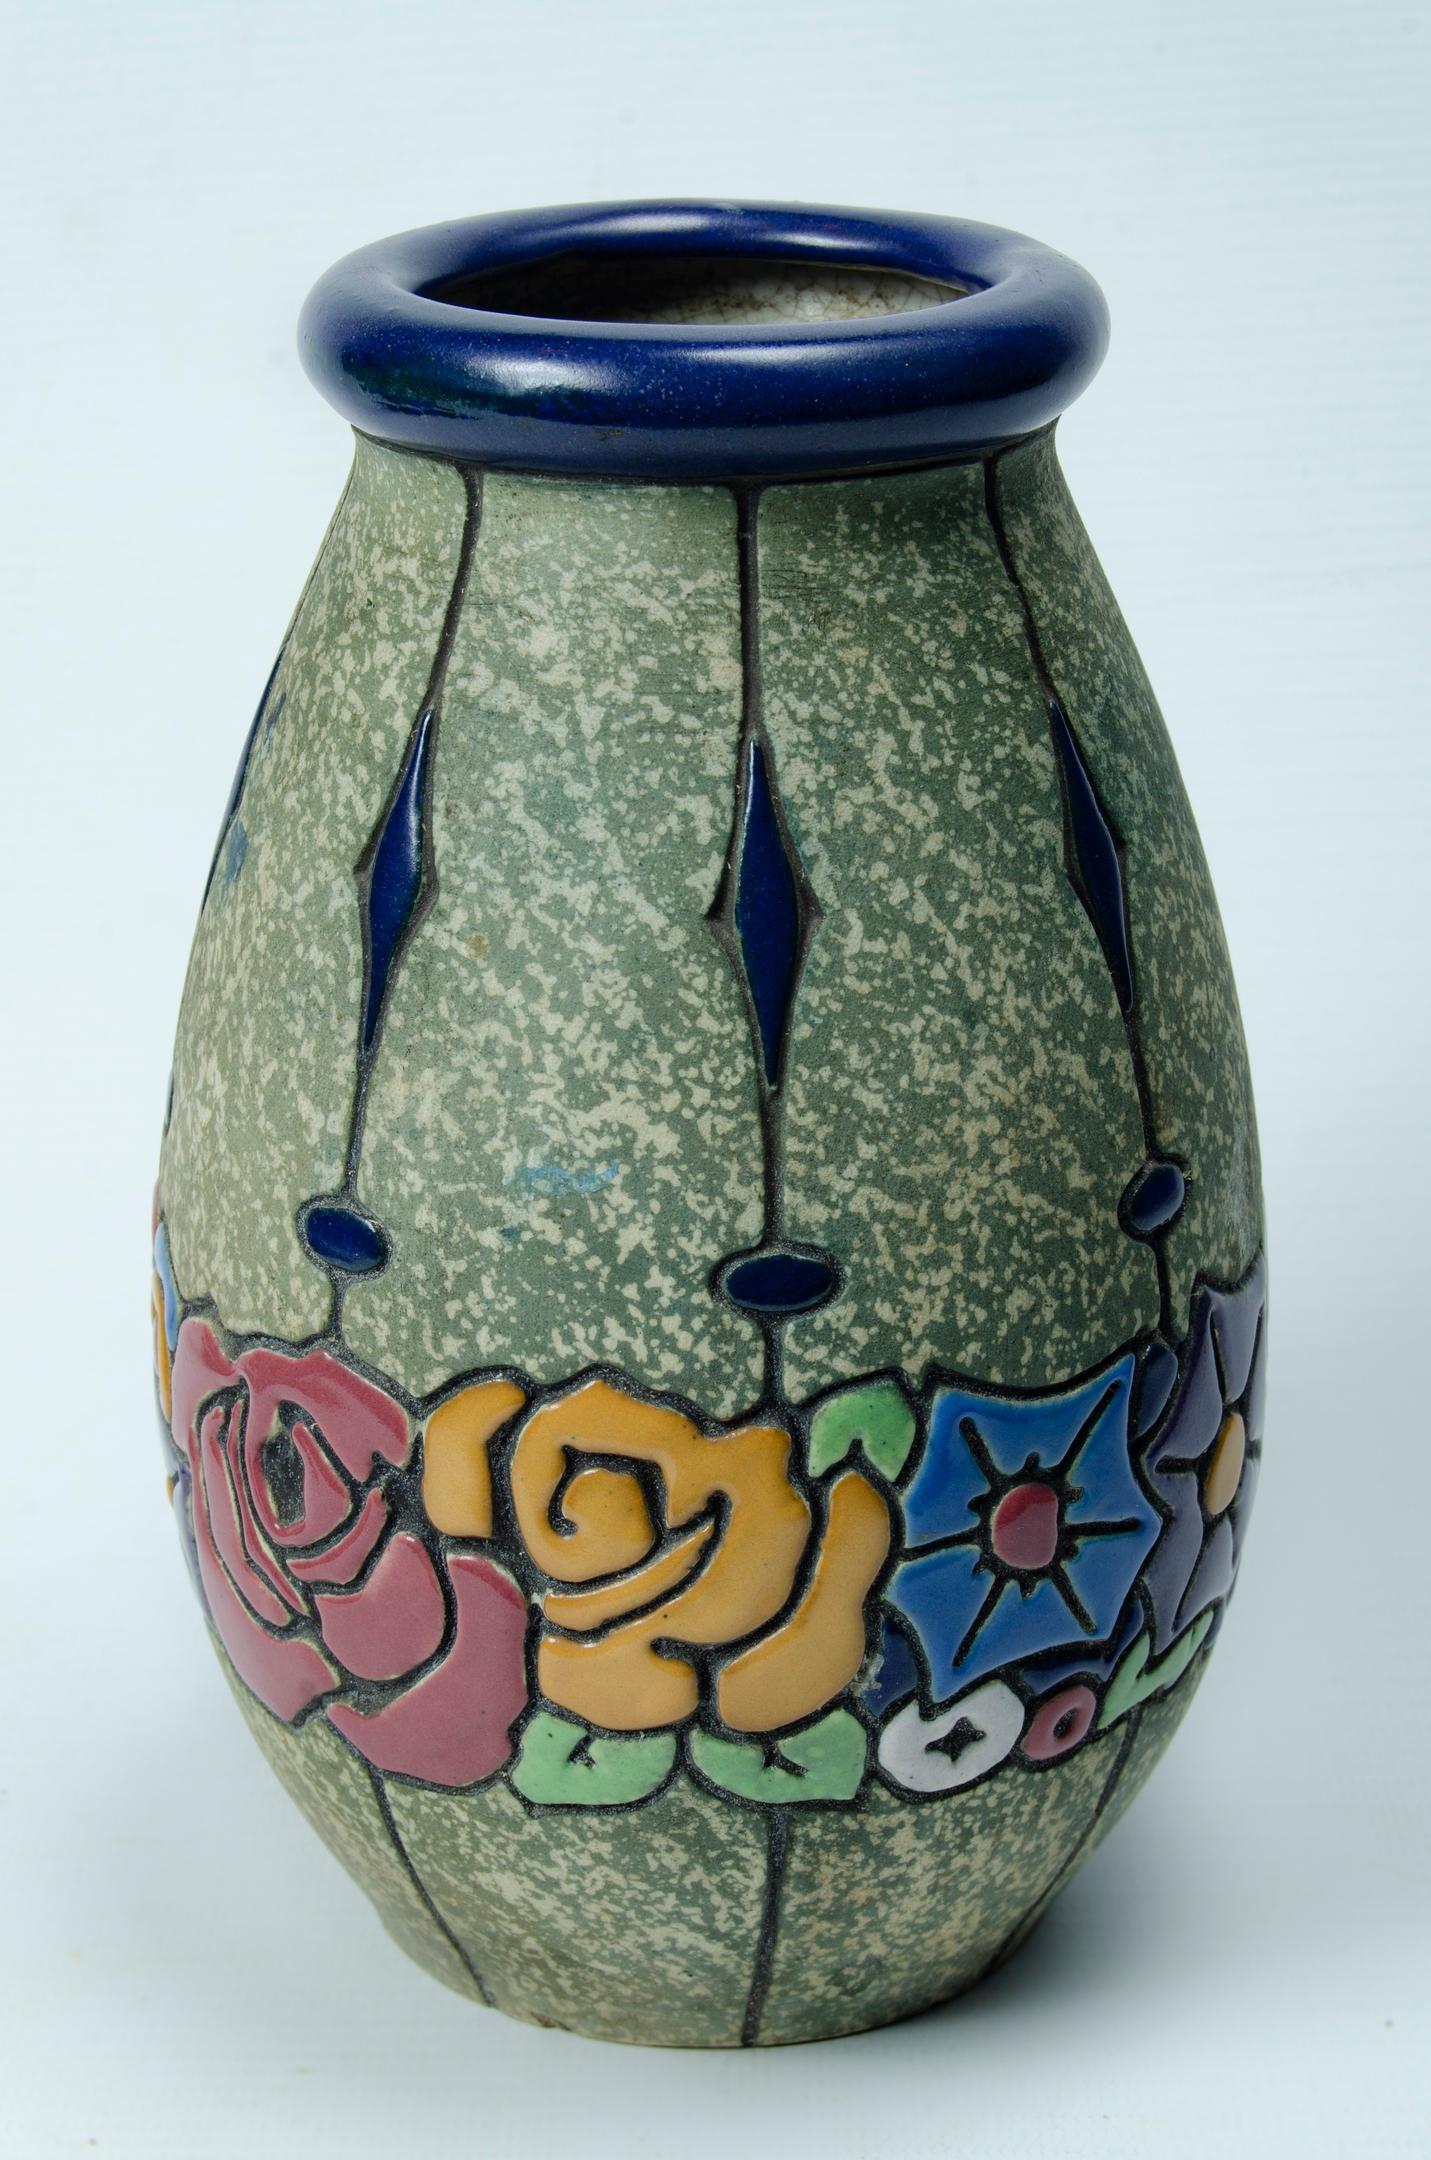 Keramik Anphora Art deco Periode
Herkunft Tschechische Rep. Florales Motiv
an seiner Basis versiegelt
das Stück ist in perfektem Zustand
um 1920.